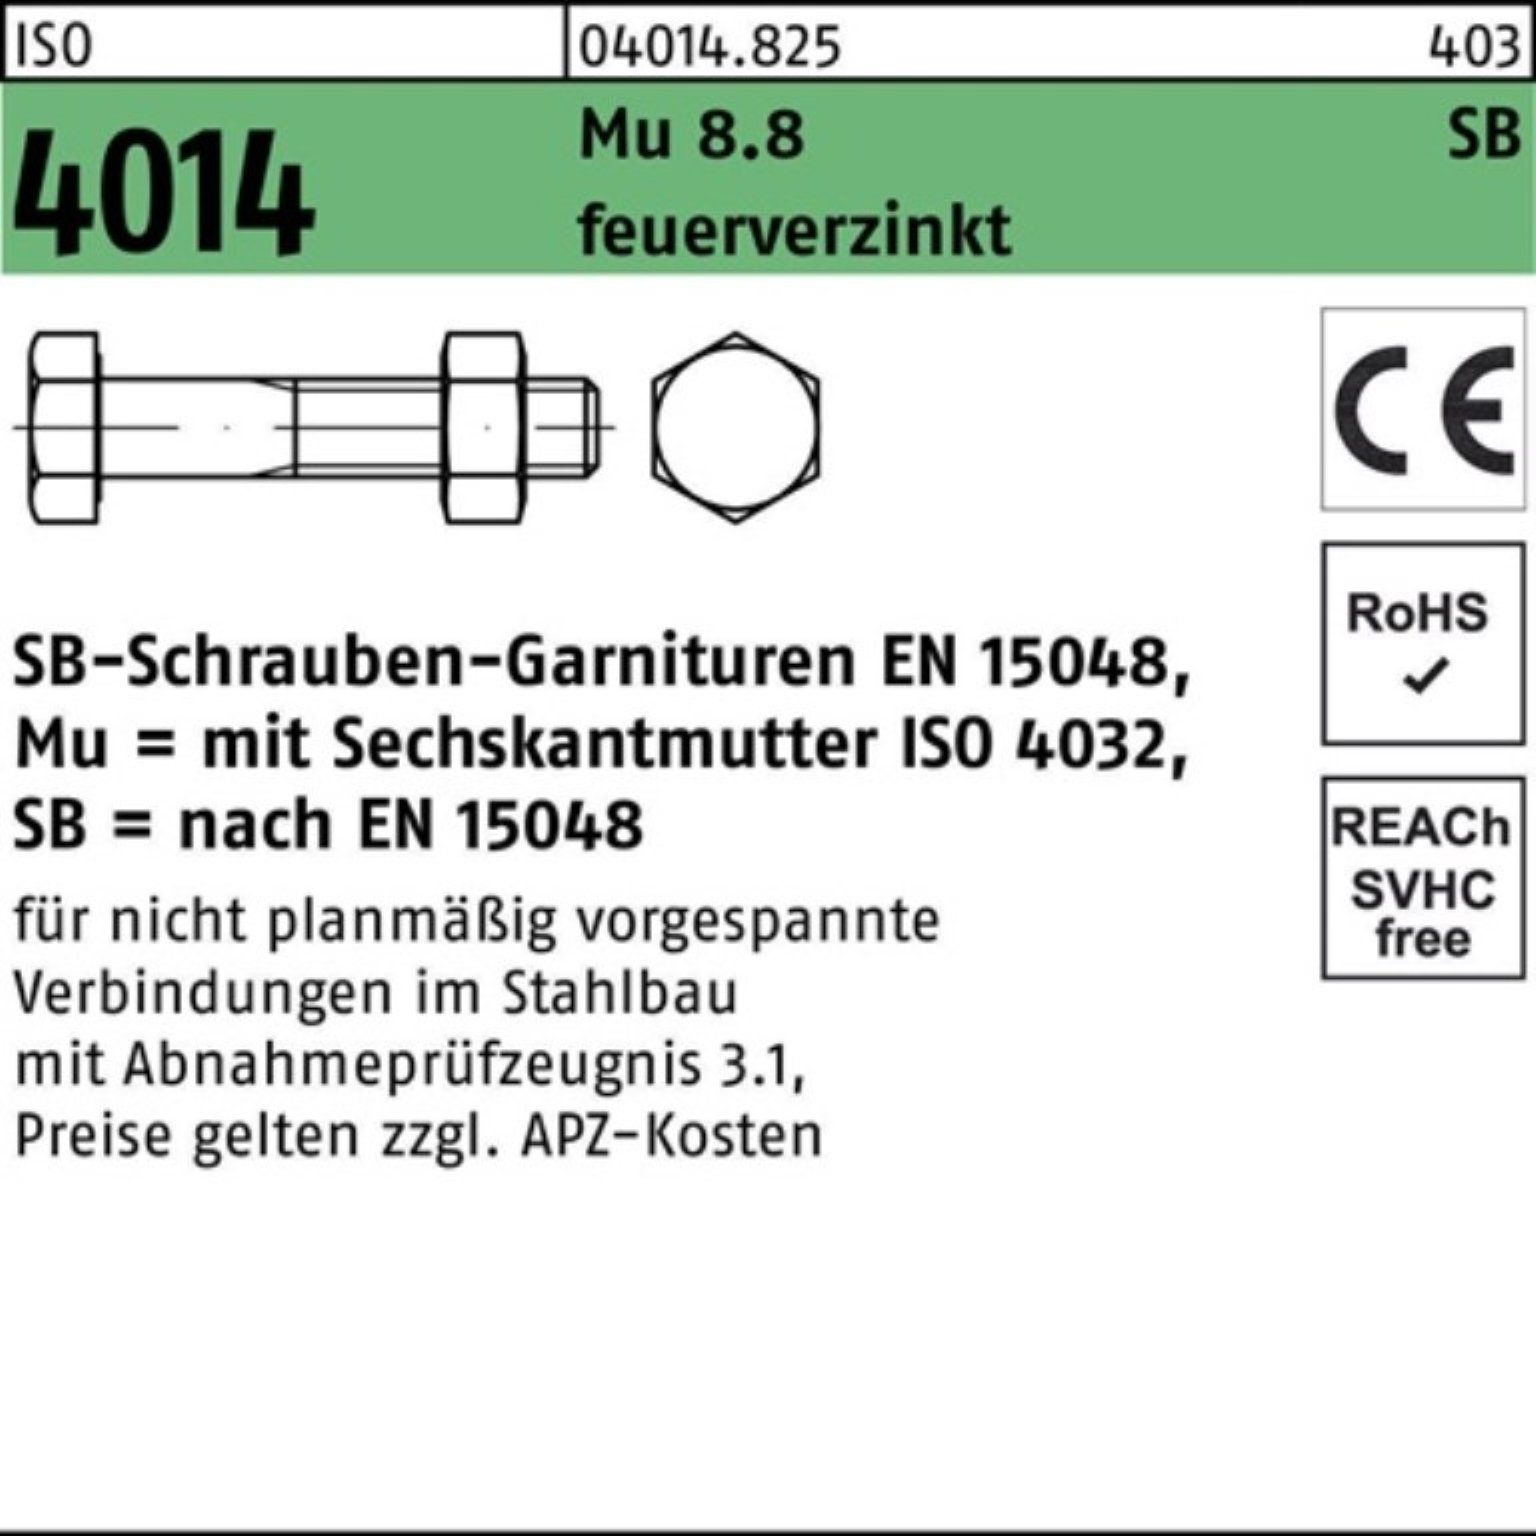 Schaft/Mutter Sechskantschraube 100er 140 4014 M20x Bufab feuer 8.8 Pack Sechskantschraube ISO